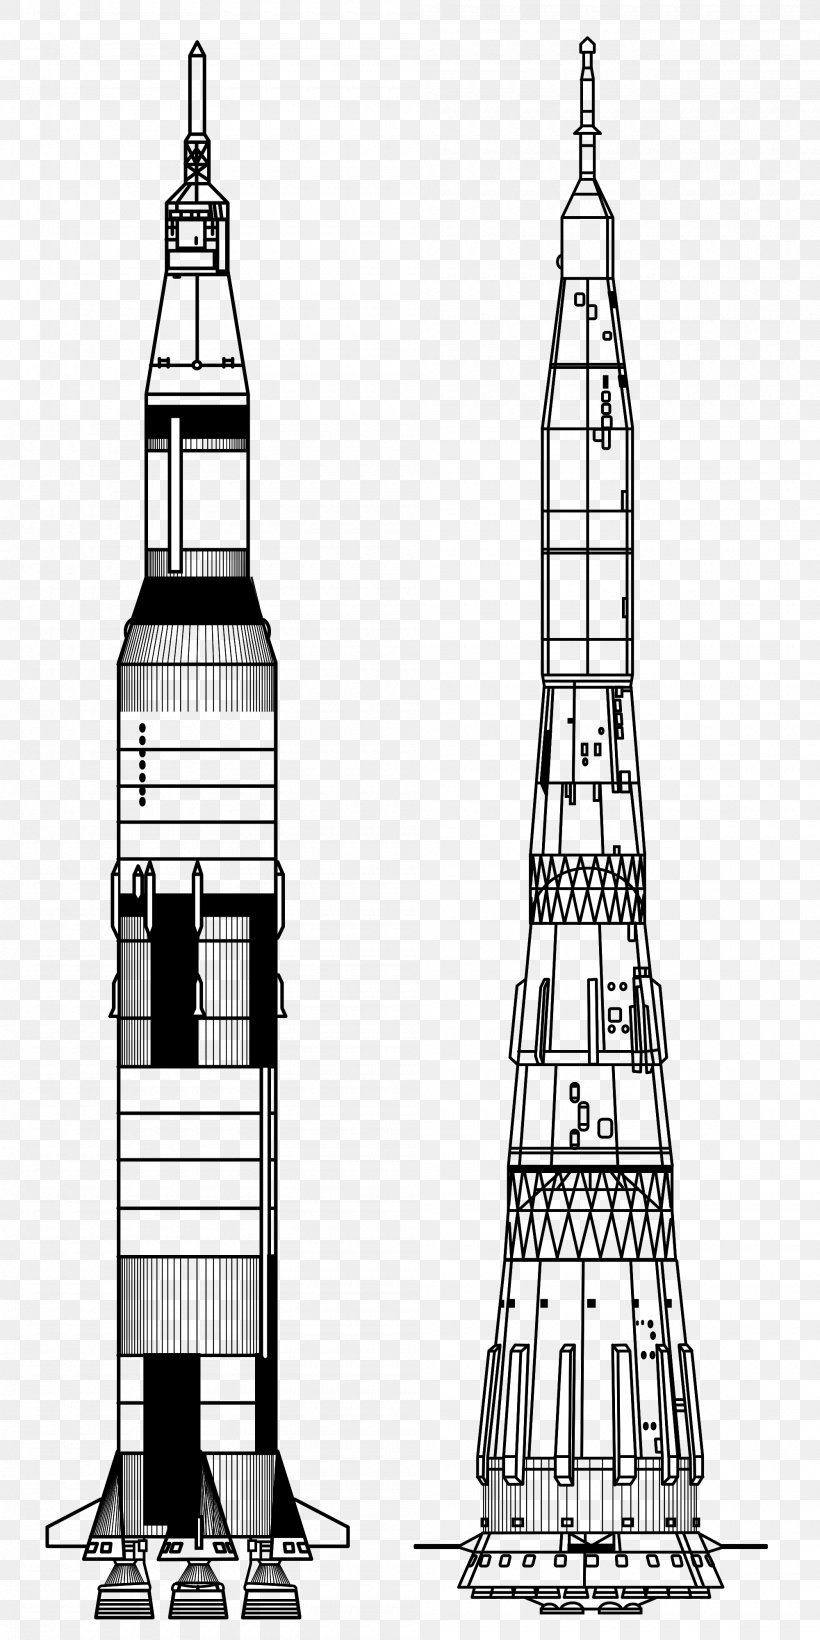 Apollo Program Apollo 11 Apollo 13 Saturn V N1, PNG, 2000x4000px